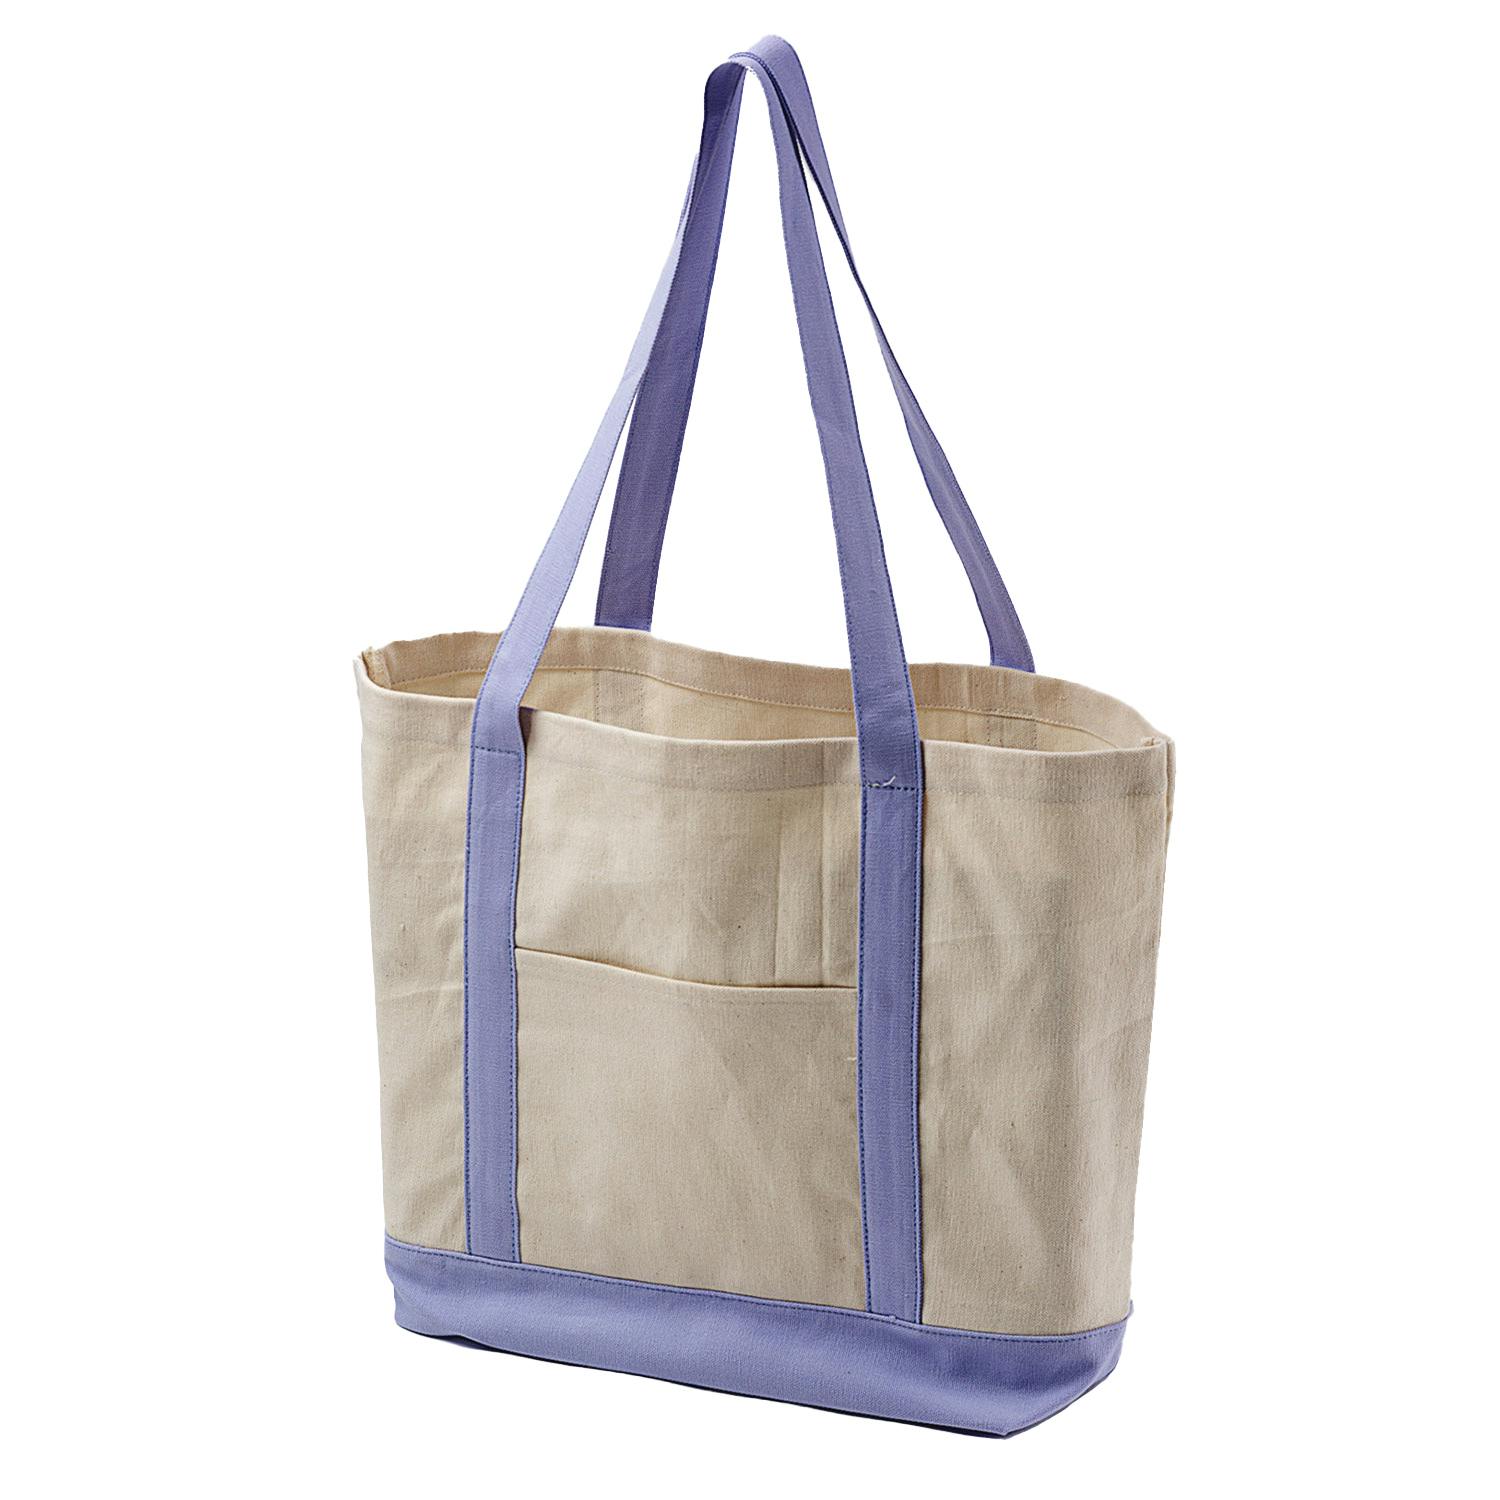 12oz Natural Color Cotton Canvas Shoulder Bag Rope Handle Canvas